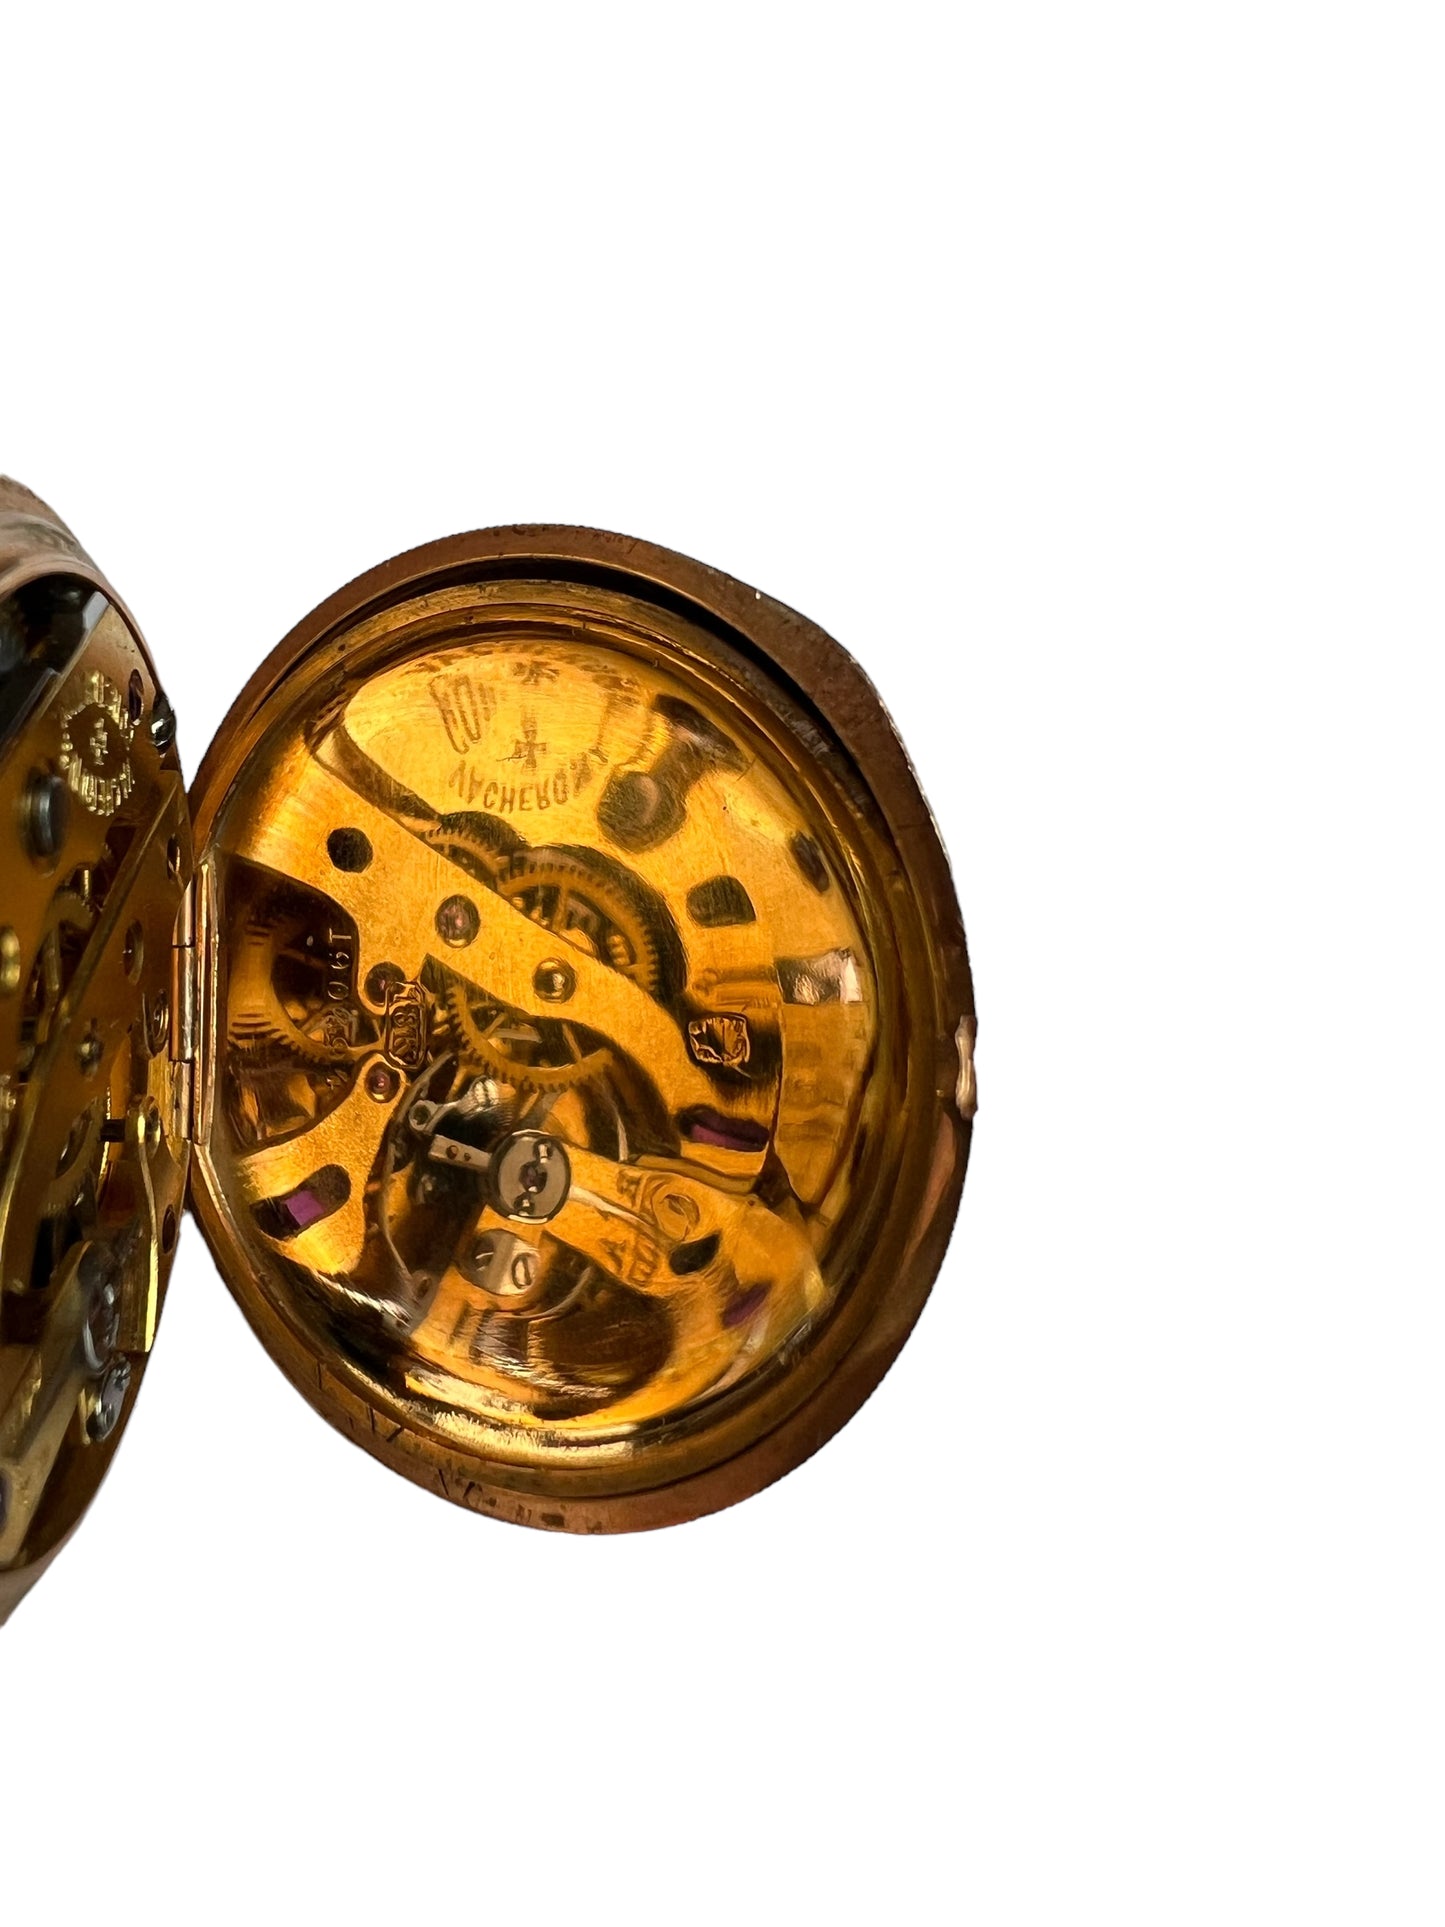 Vacheron Constantin 18k Gold Pendant & Pocket Watch Taschenuhr / Montre de poche Handpainted year 1901